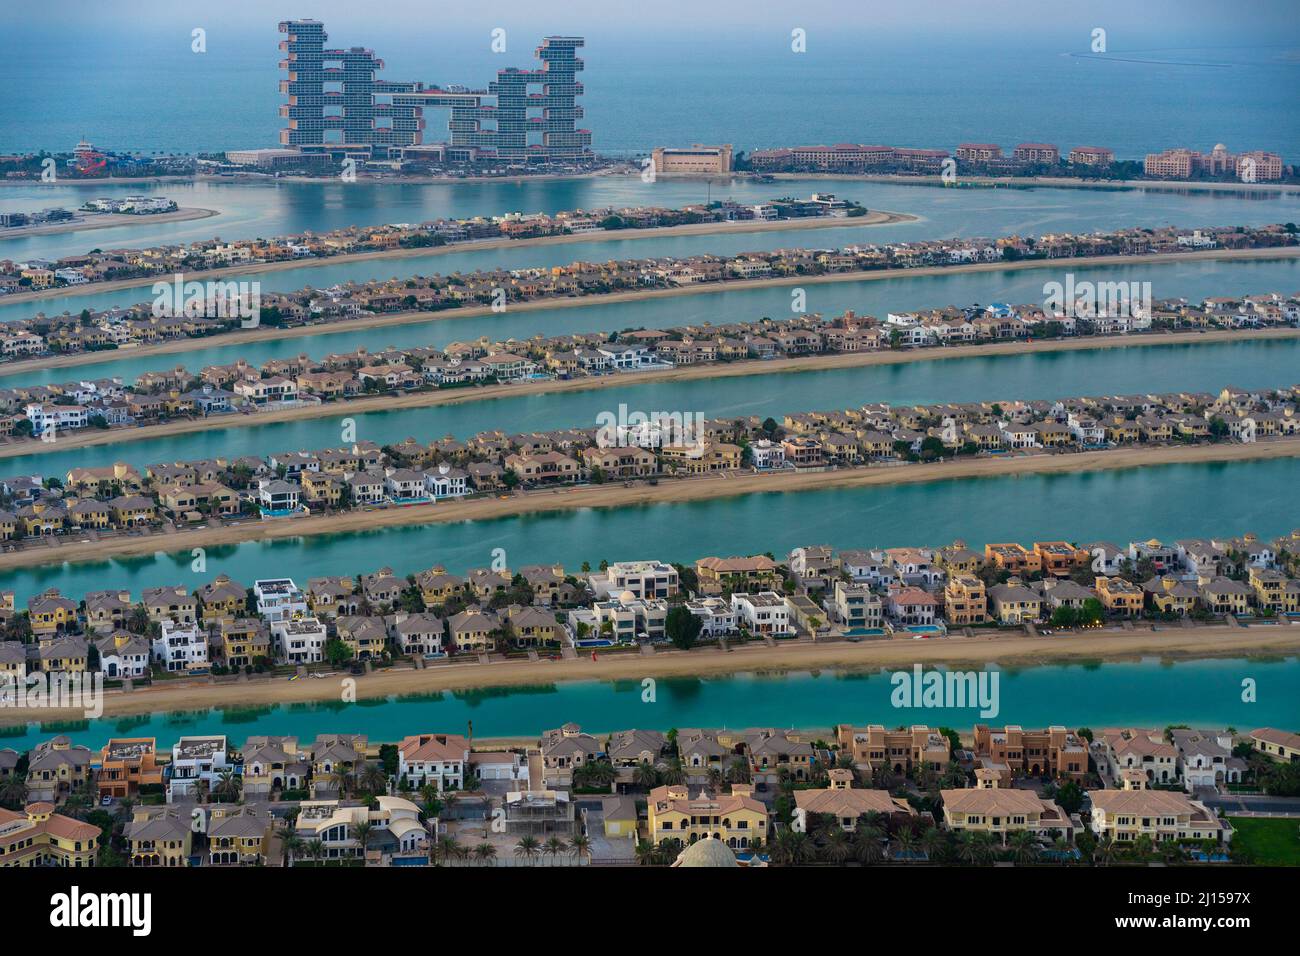 Dubai, VAE - 05 2021. Dez.: Luftaufnahme der Häuser von Palm Jumeirah mit dem einzigartigen Royal Atlantis Hotel im Hintergrund Stockfoto